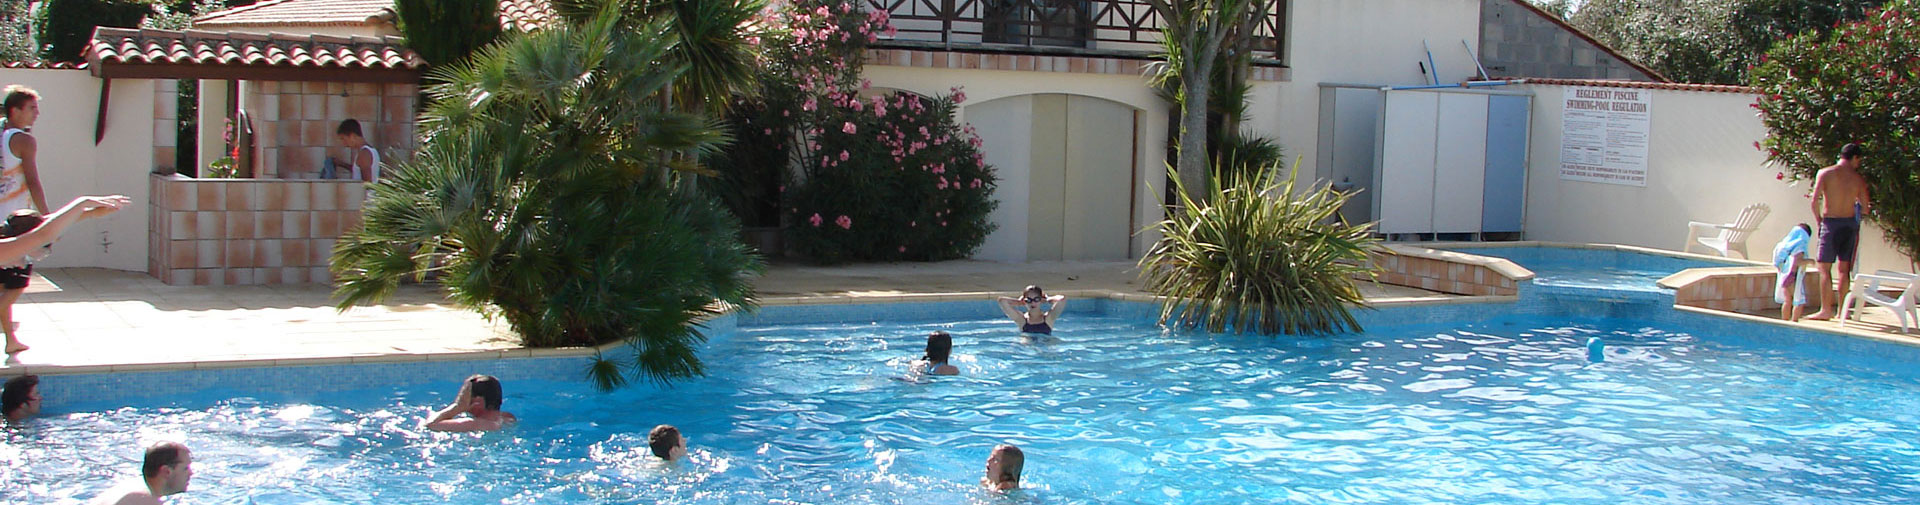 Sehenswürdigkeiten und Unternehmungen in der Nähe Ihrer Ferienunterkunft auf der Insel Oléron